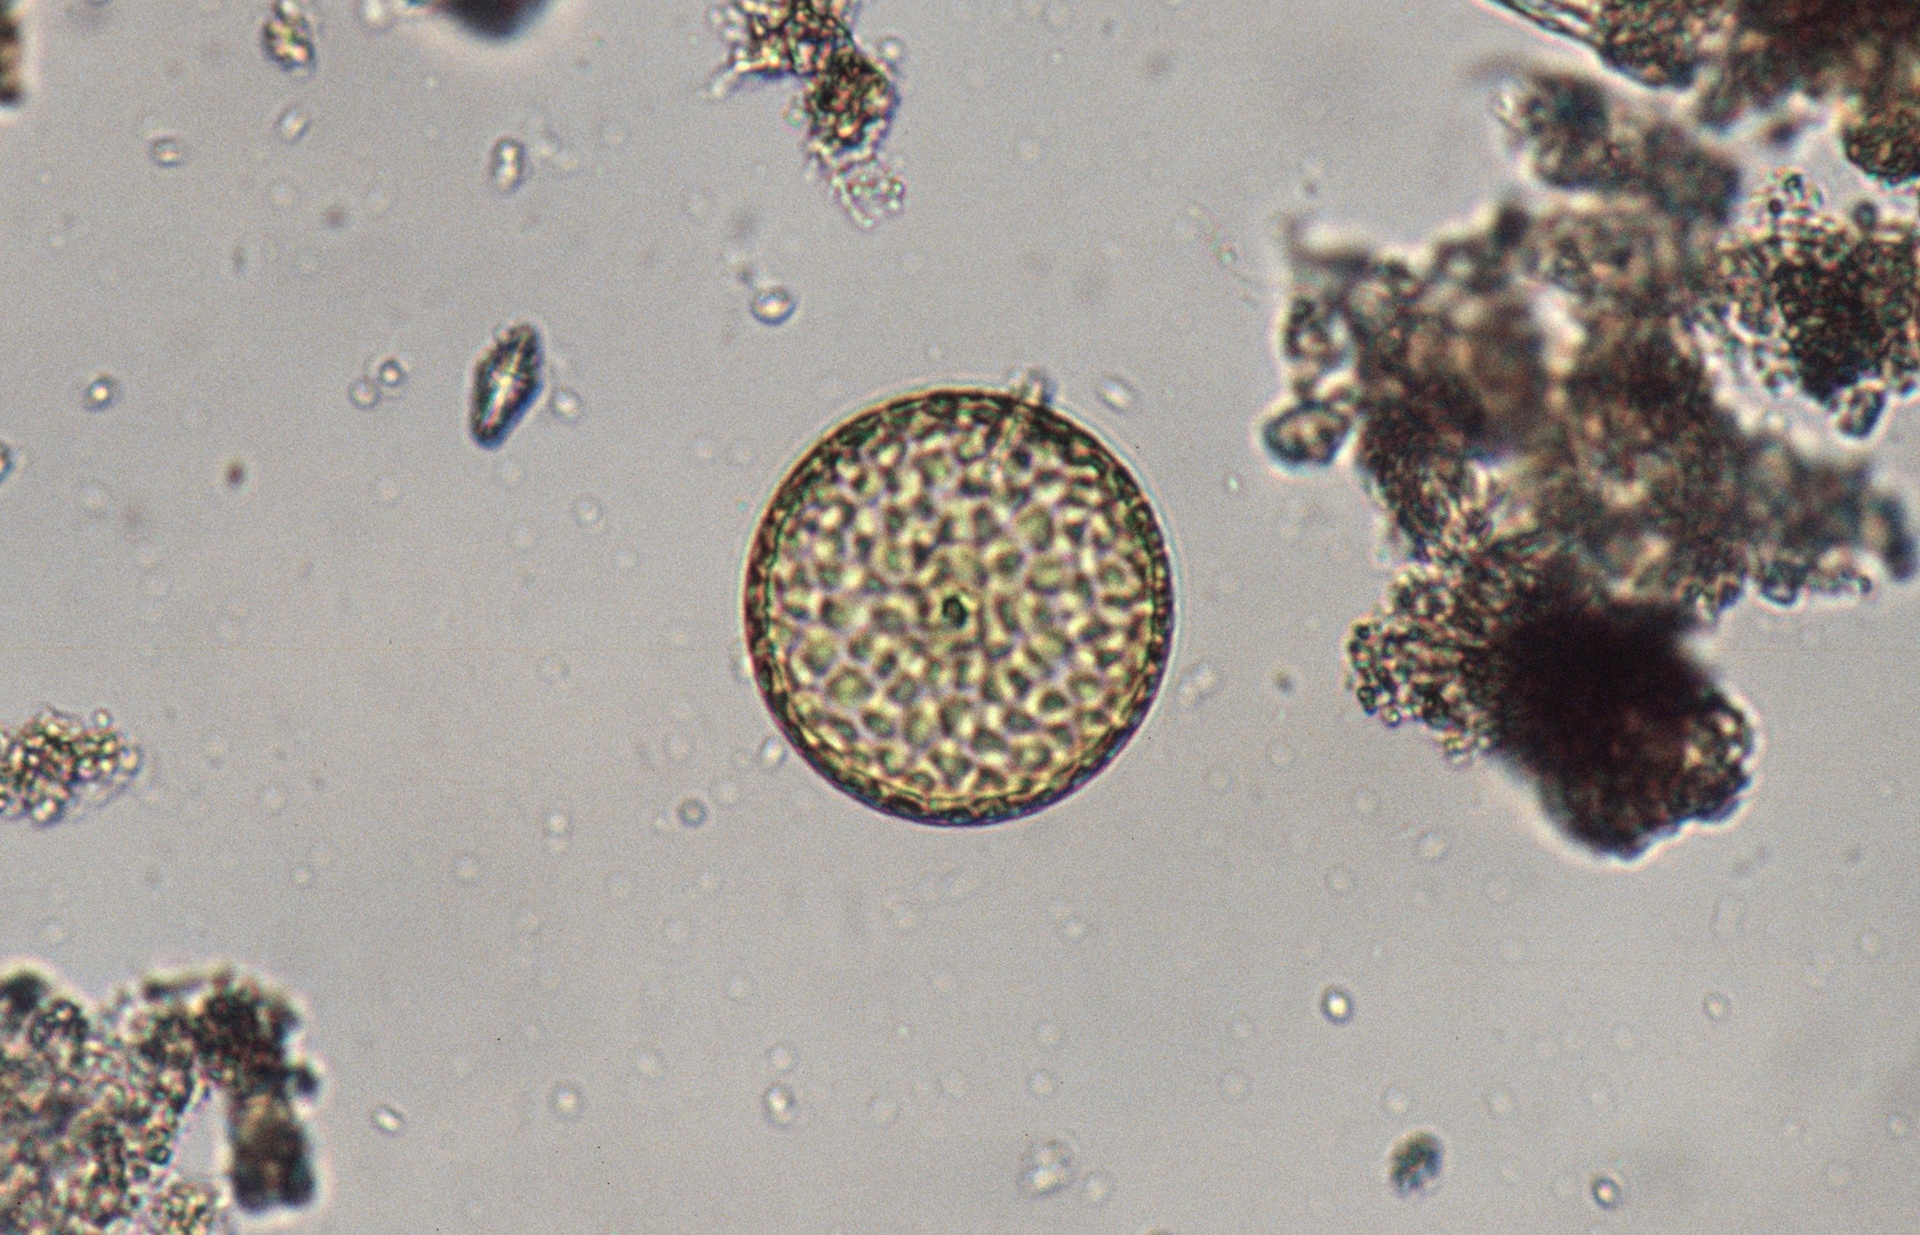 Diatomea di fitoplancton.